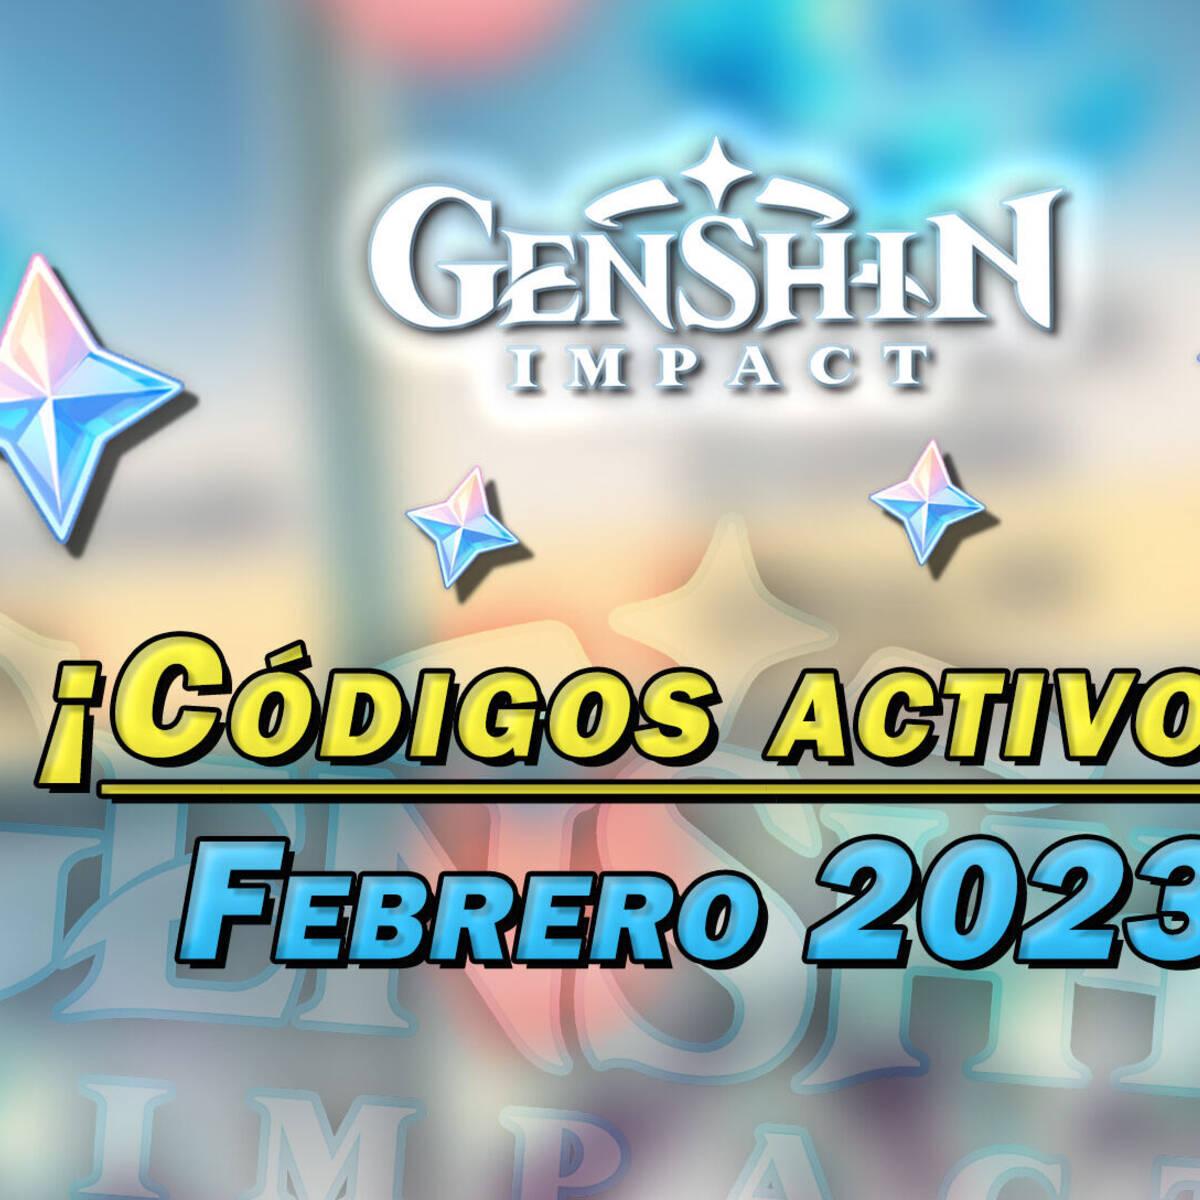 Genshin Impact códigos de enero 2022: todos los códigos de